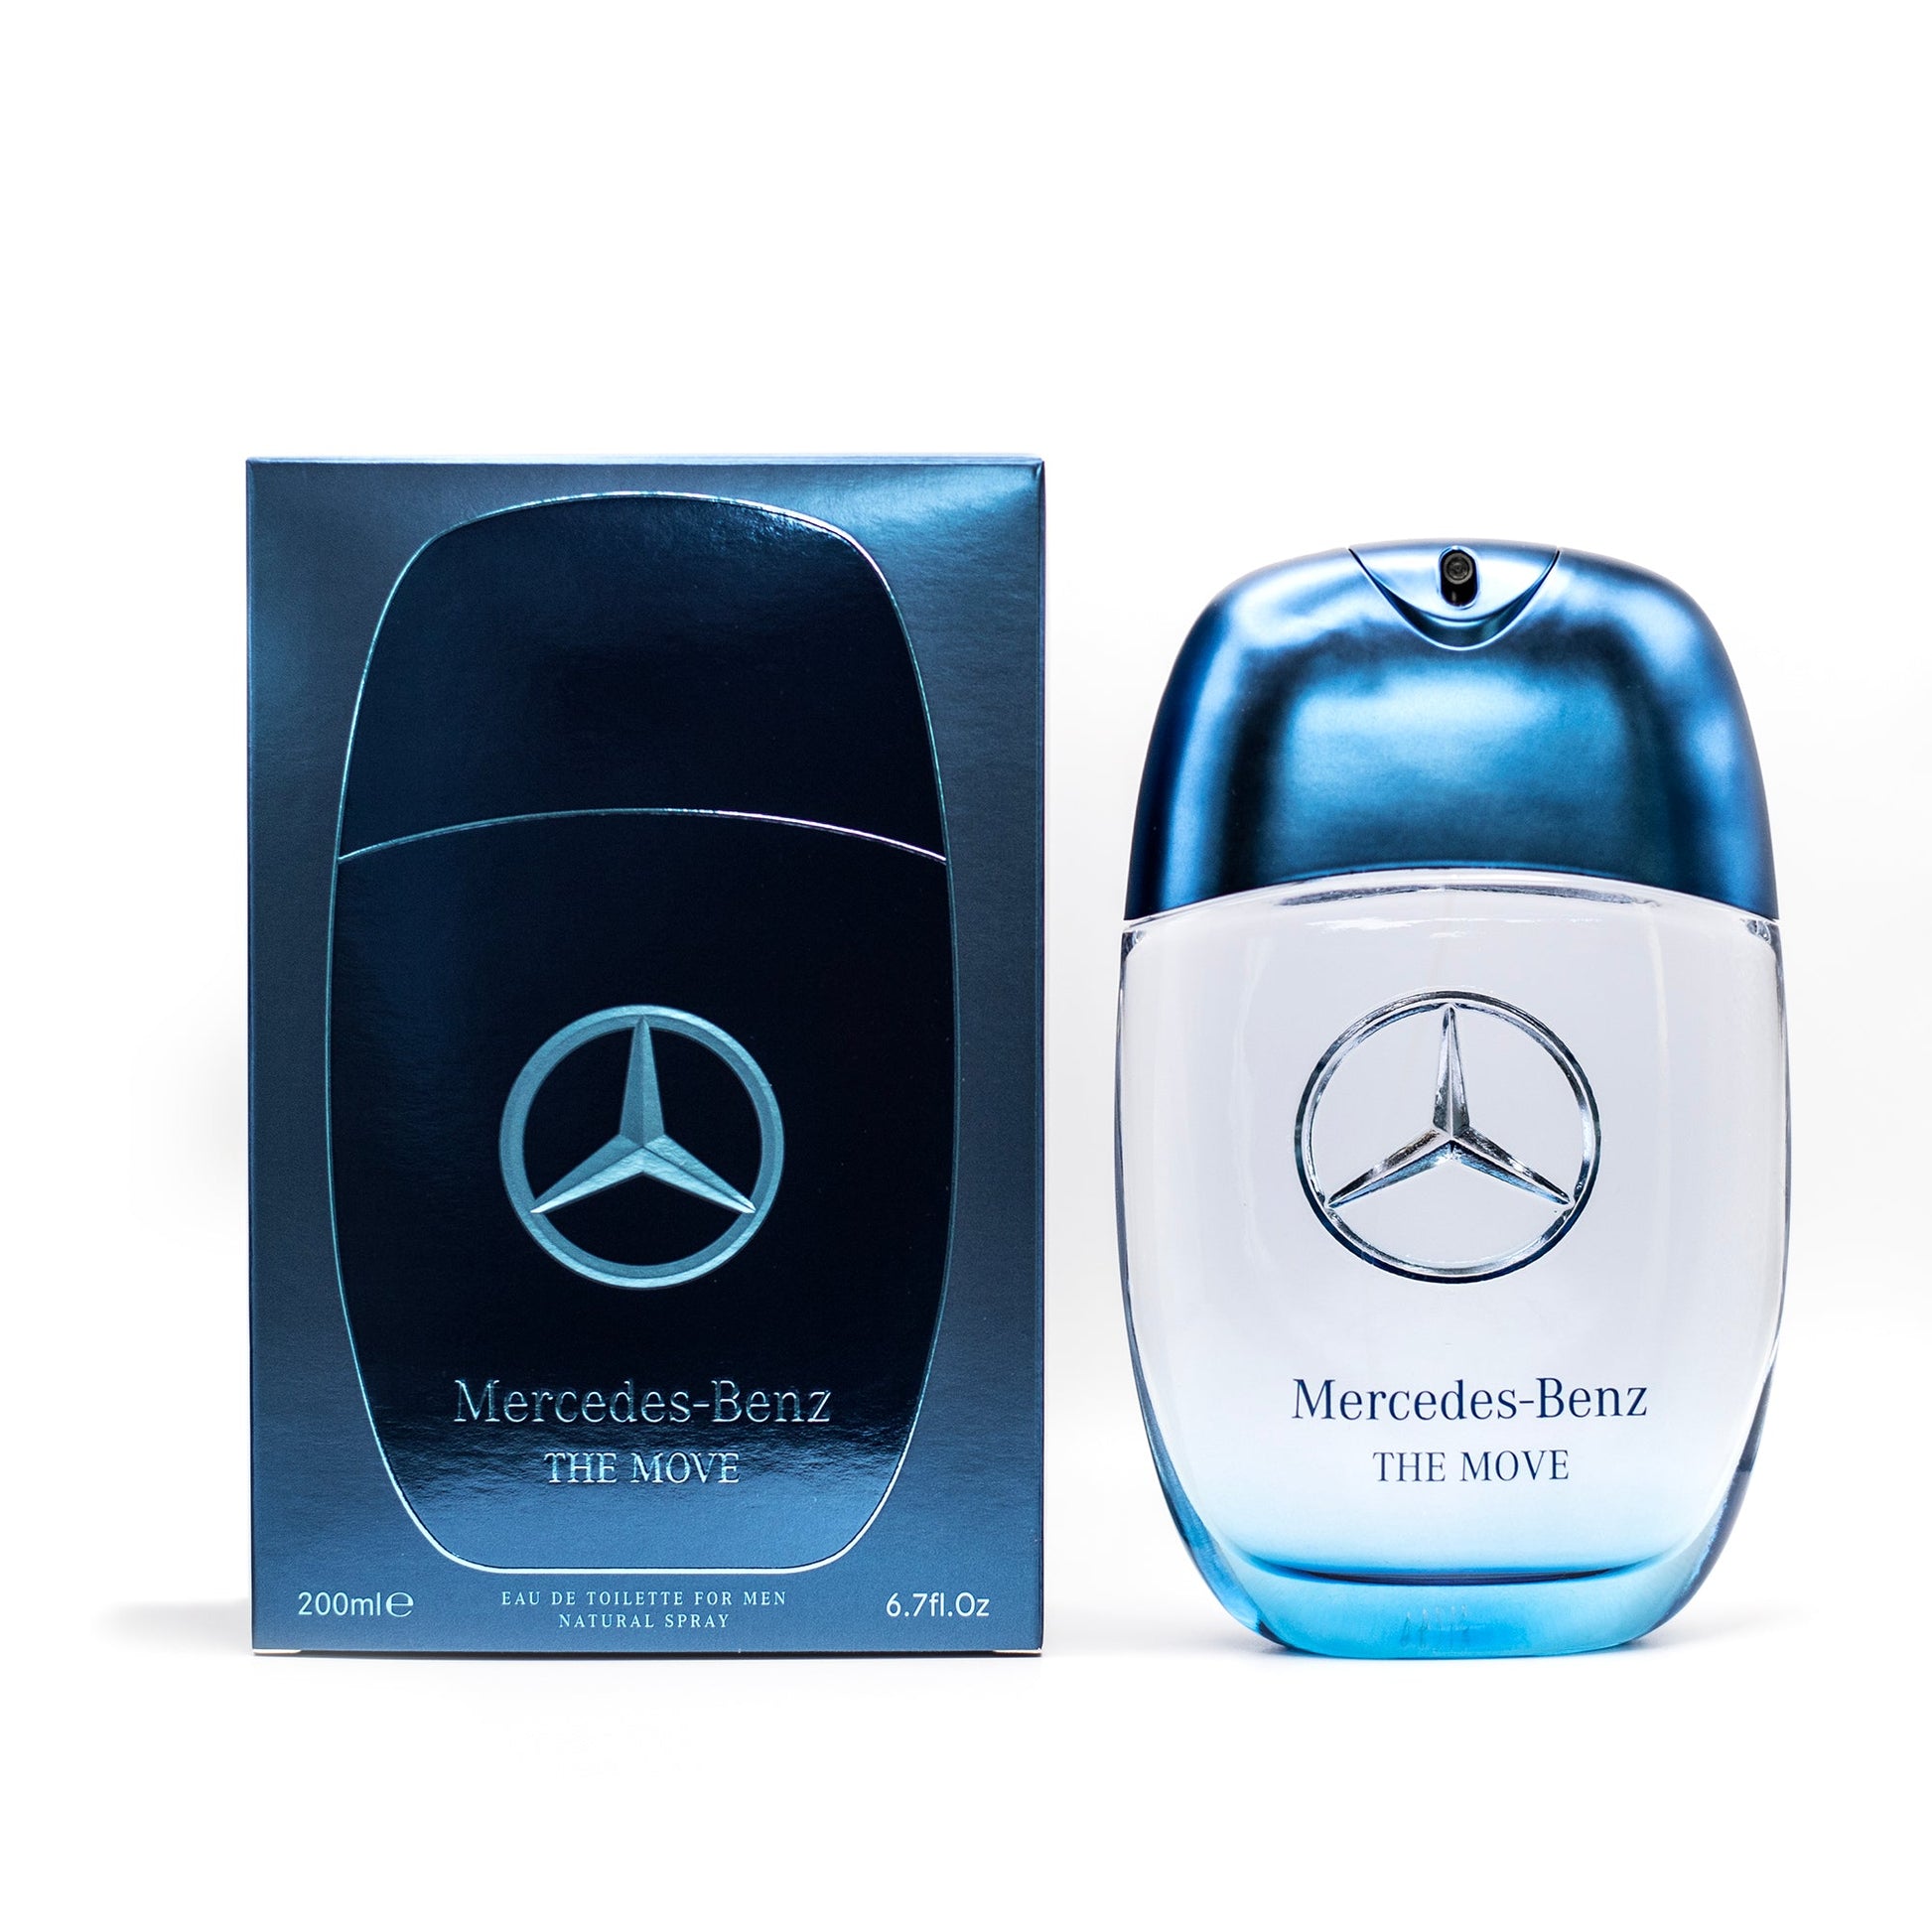 The Move Eau de Toilette Spray for Men by Mercedes-Benz, Product image 4